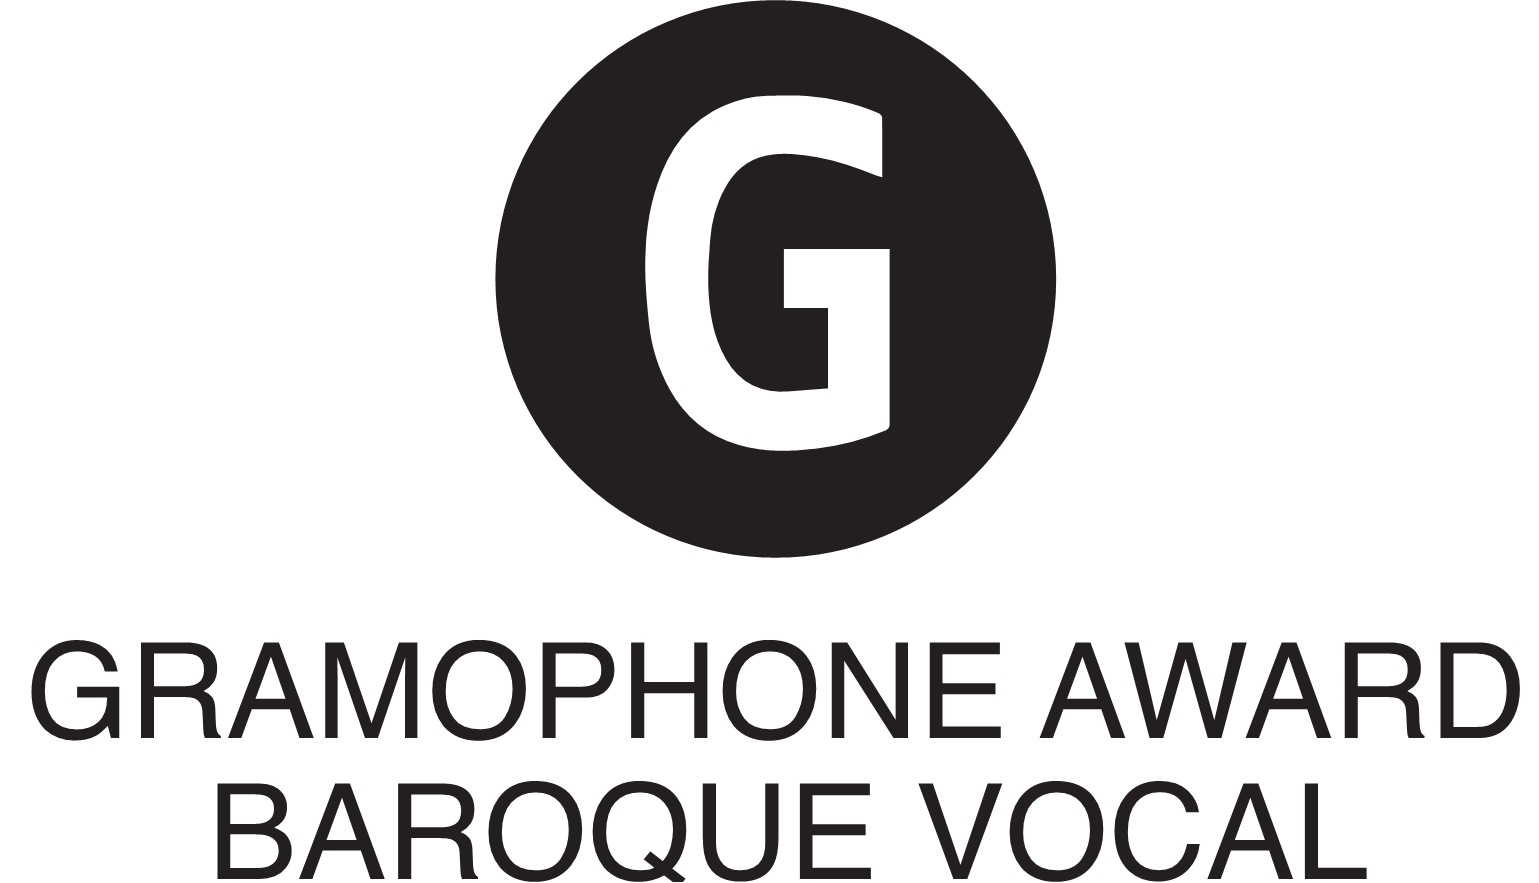 Gramophone Award: 'Baroque Vocal' (2016)